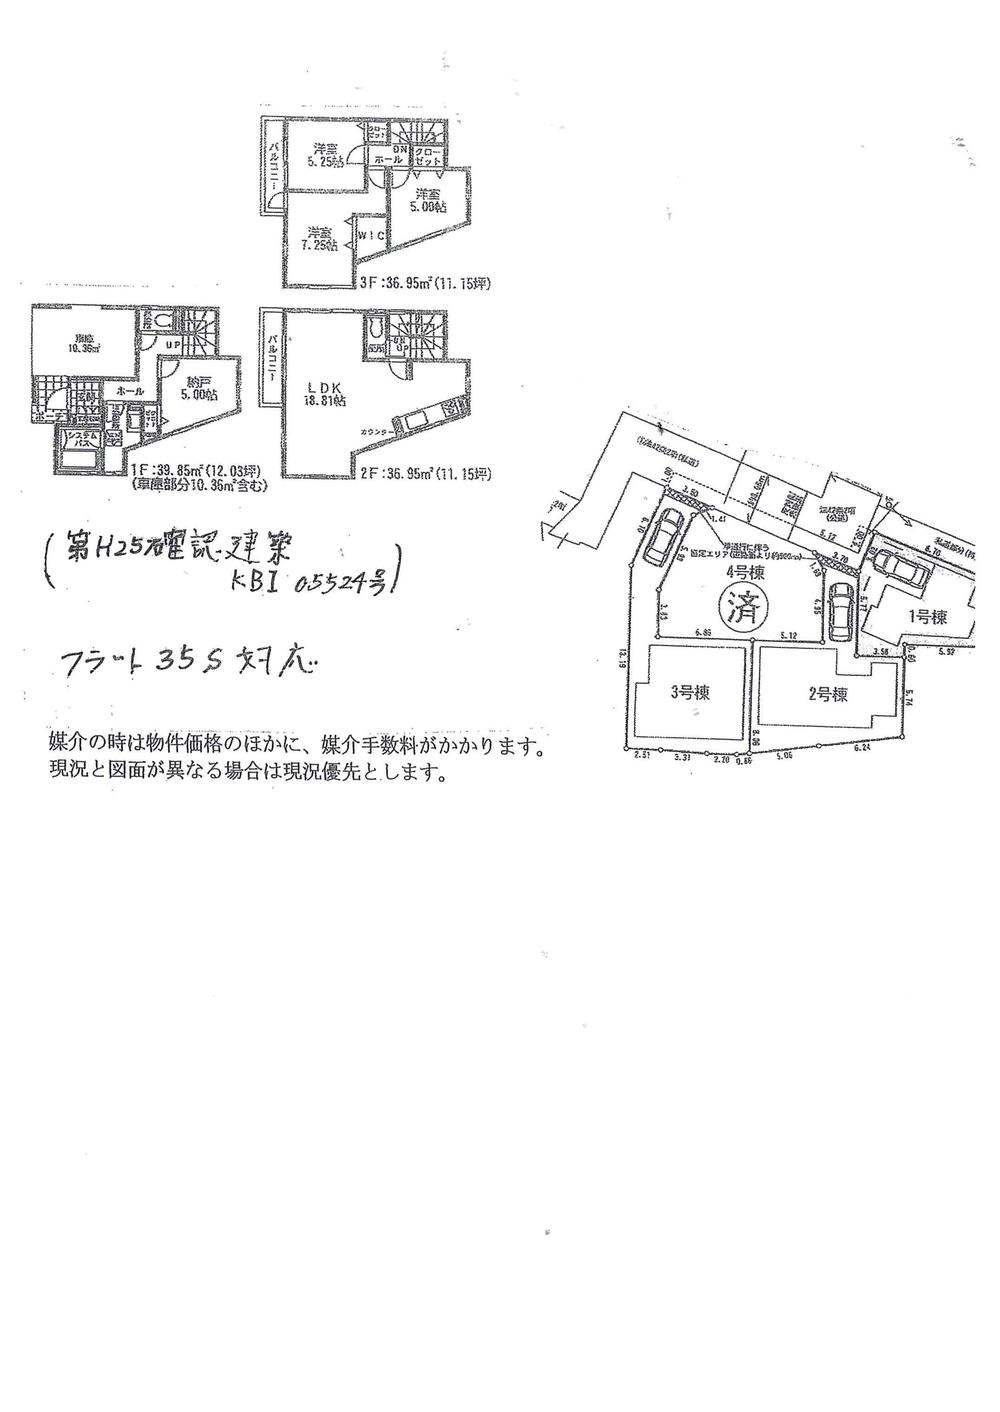 Floor plan. 25,800,000 yen, 3LDK + S (storeroom), Land area 62.82 sq m , Building area 113.75 sq m planned floor plan.